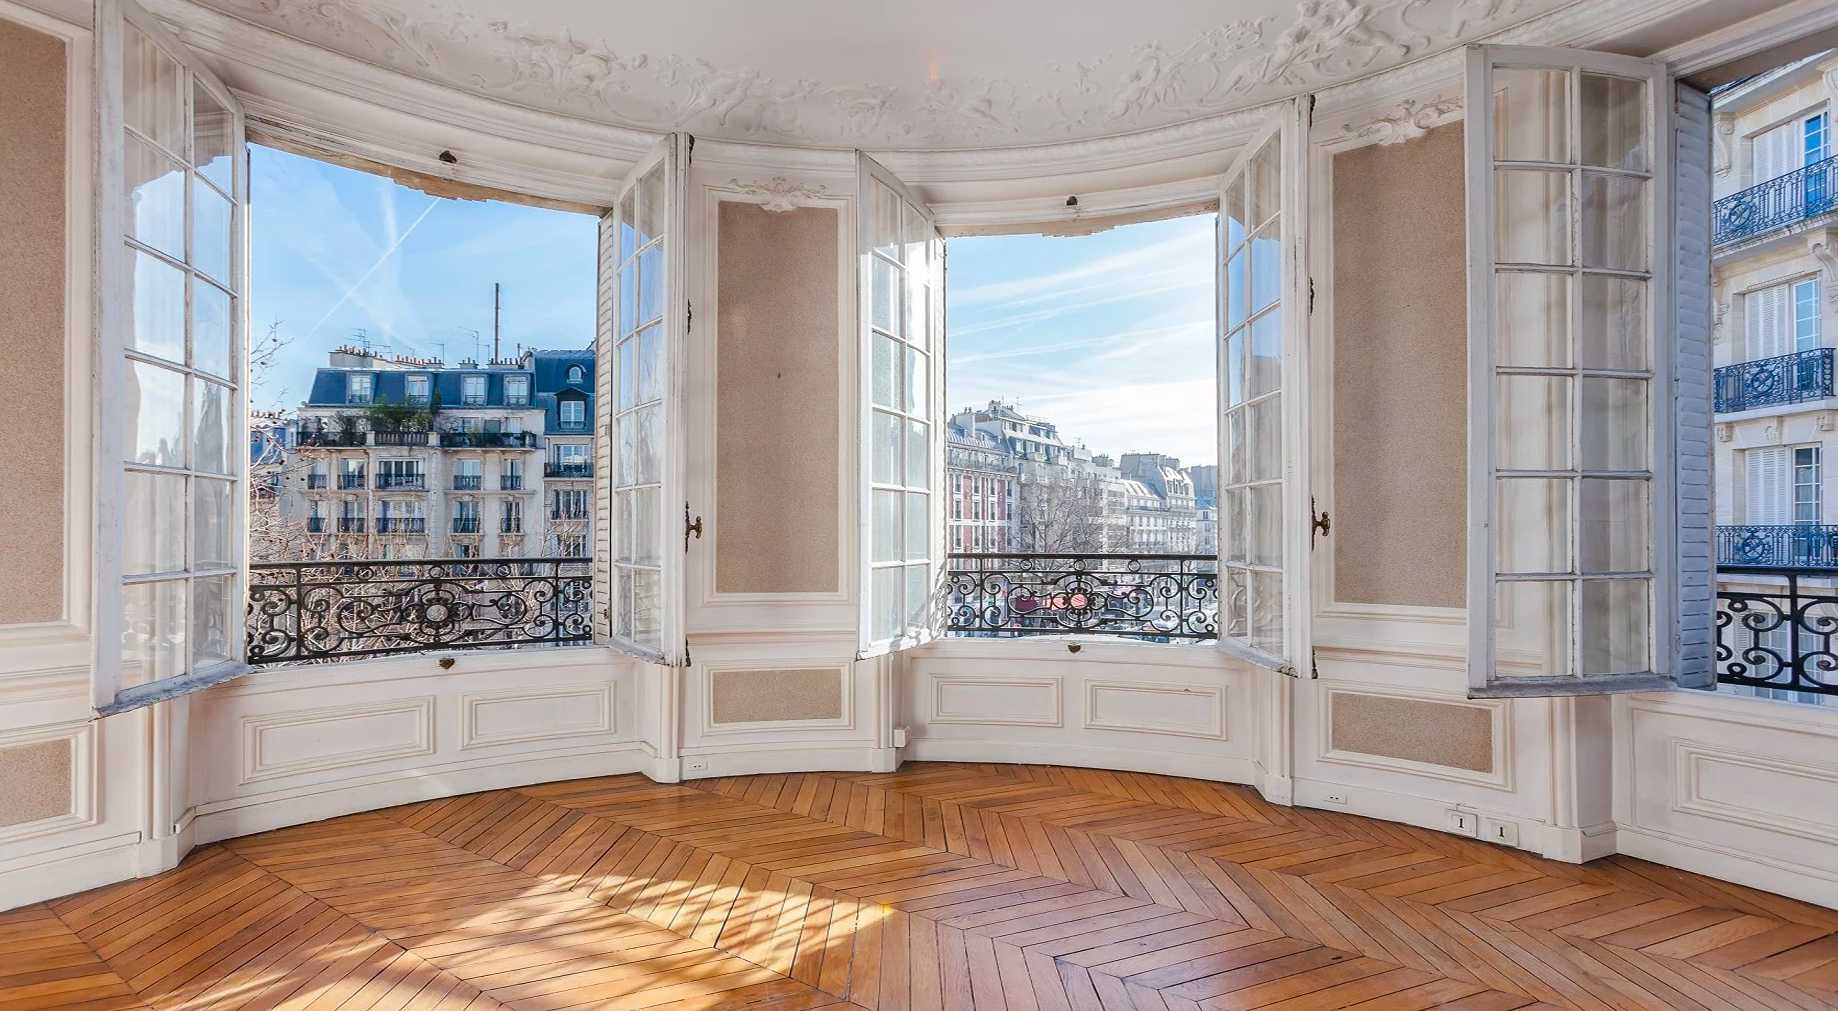 Un architecte vous conseille lorsque vous êtes sur le point d’acheter un bien immobilier à Bruxelles